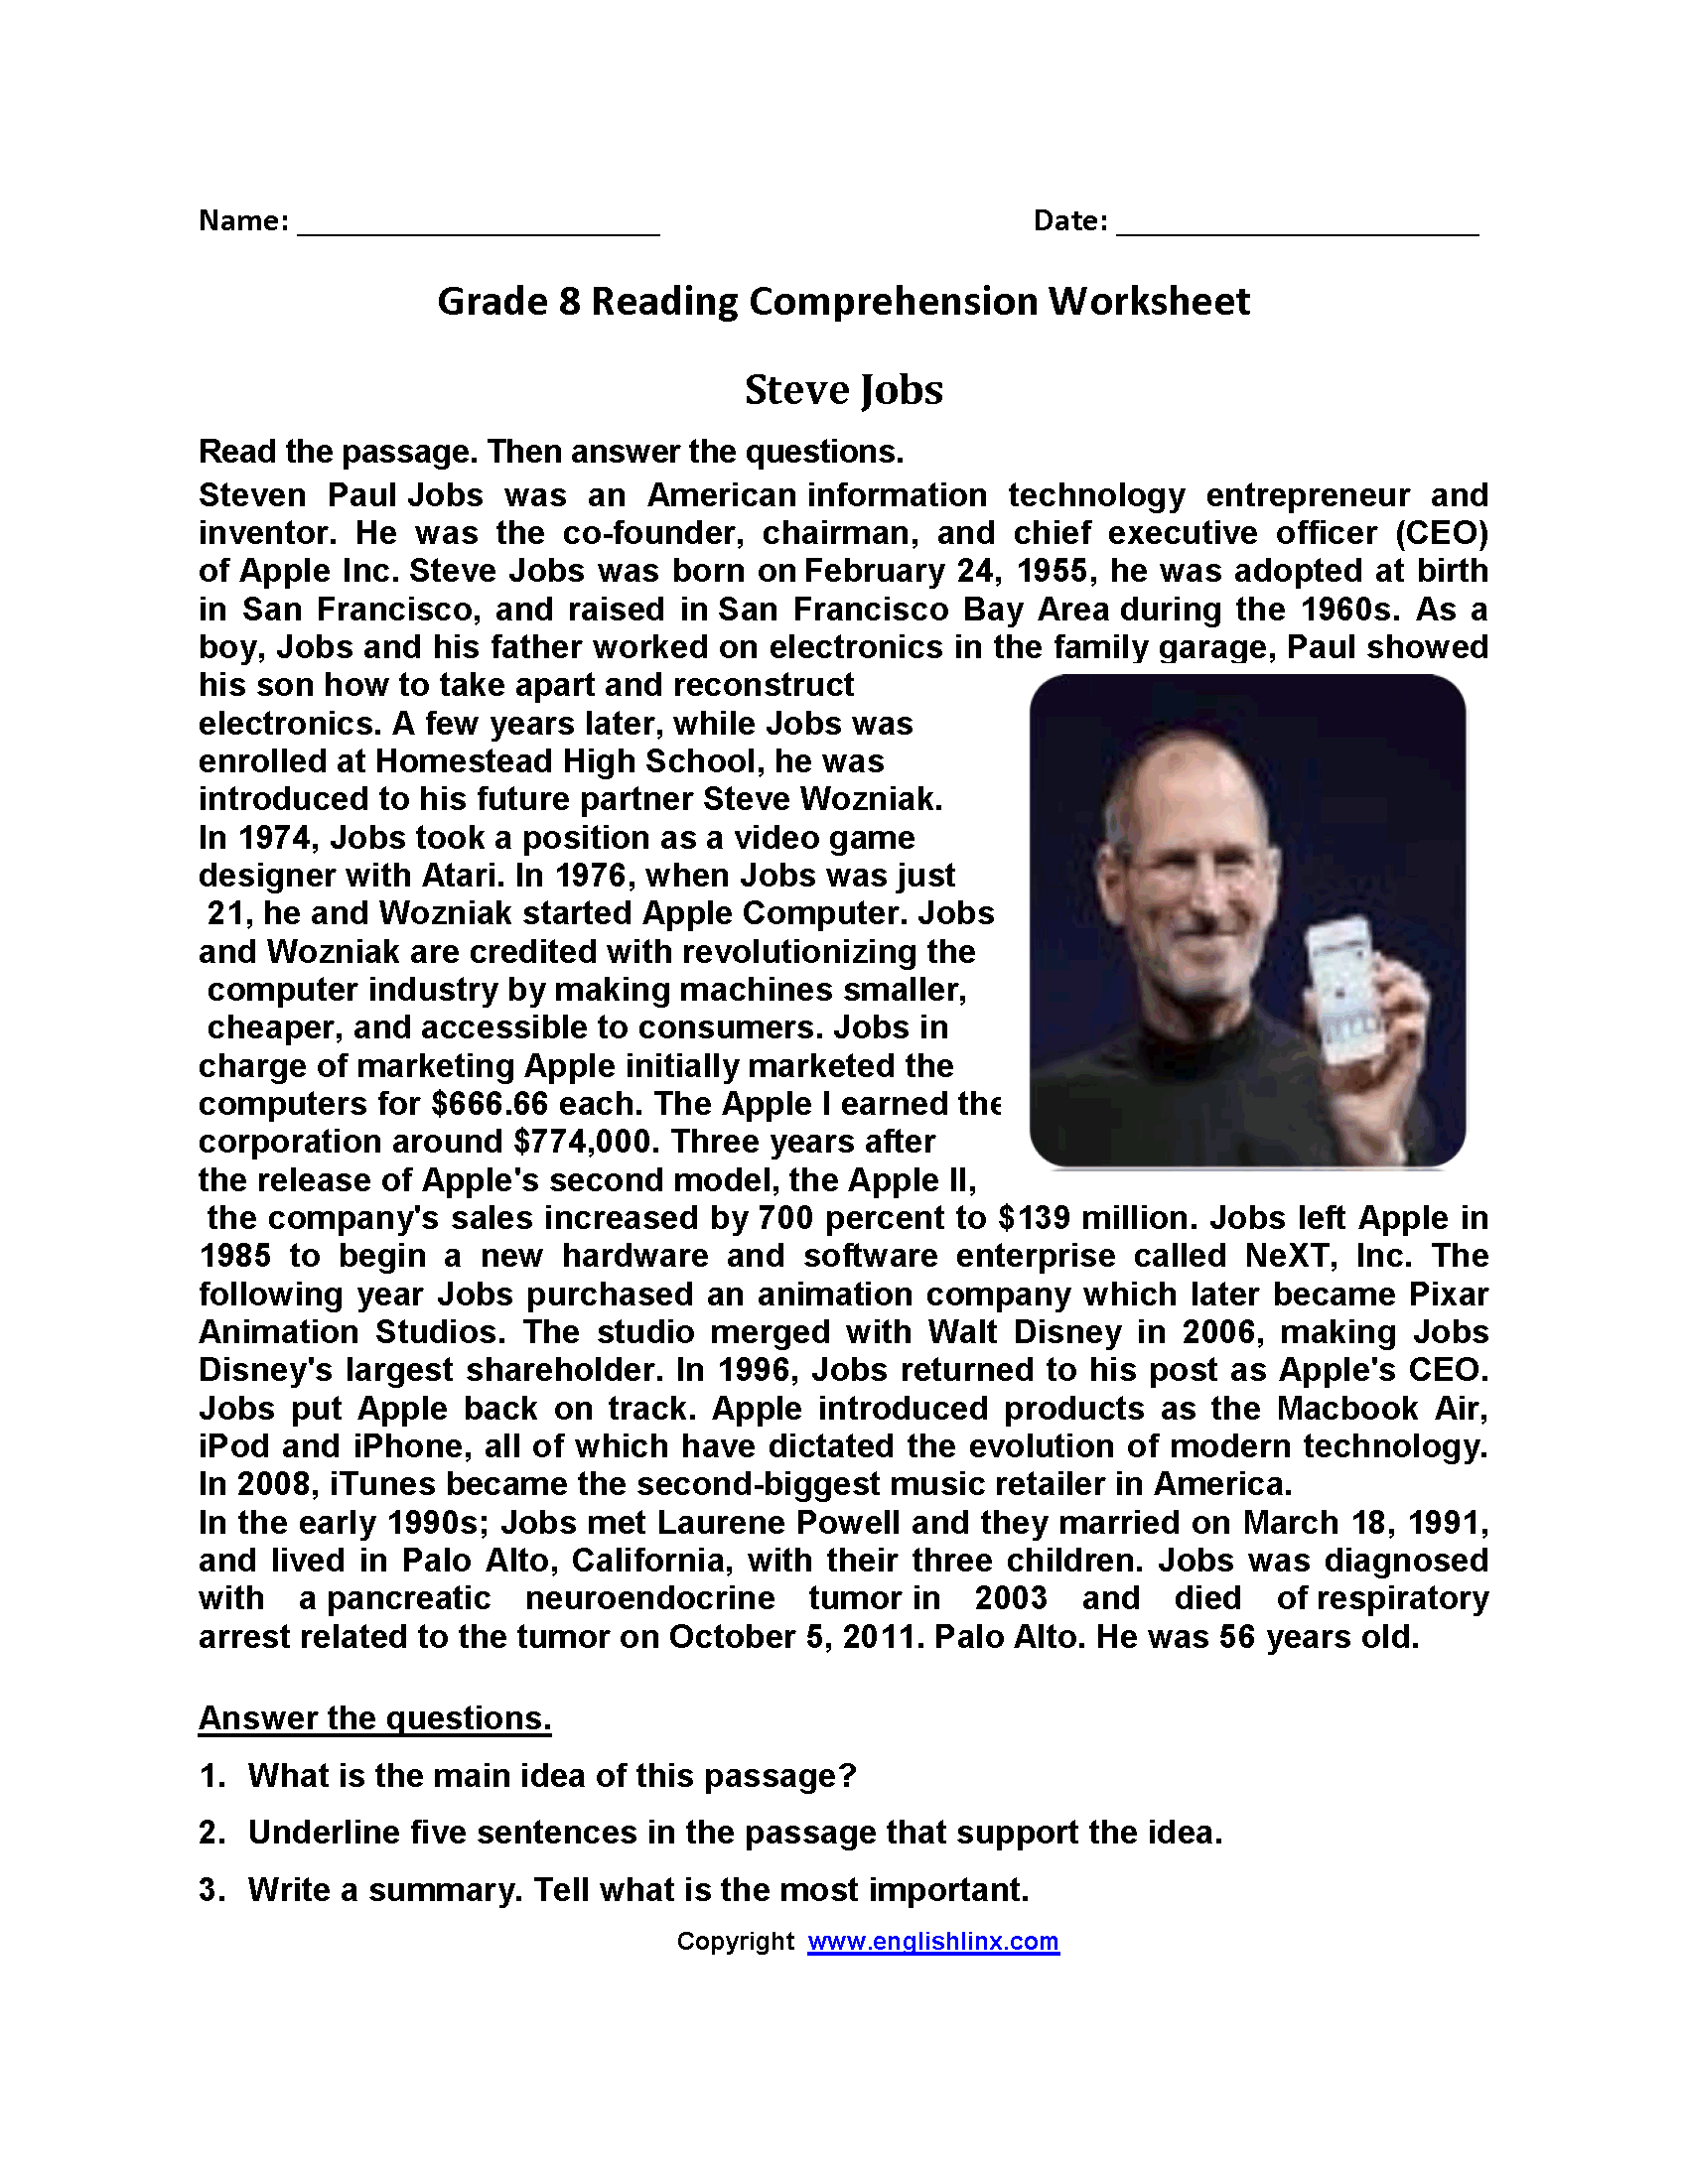 Steve Jobs Eighth Grade Reading Worksheets